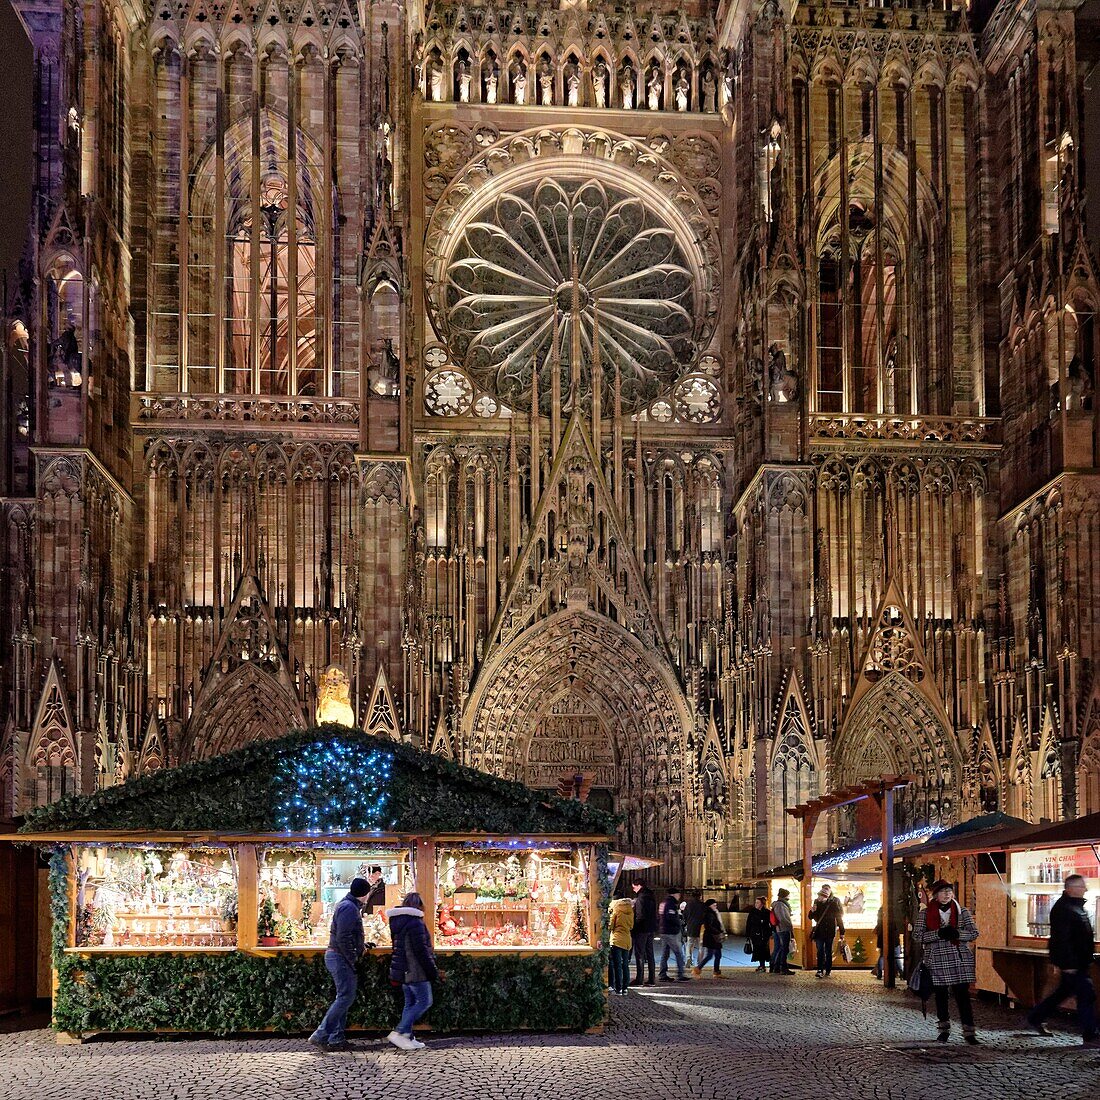 Frankreich, Bas Rhin, Straßburg, Altstadt, von der UNESCO zum Weltkulturerbe erklärt, Weihnachtsmarkt (Christkindelsmarik) auf dem Place de la Cathedrale mit der Kathedrale Notre Dame